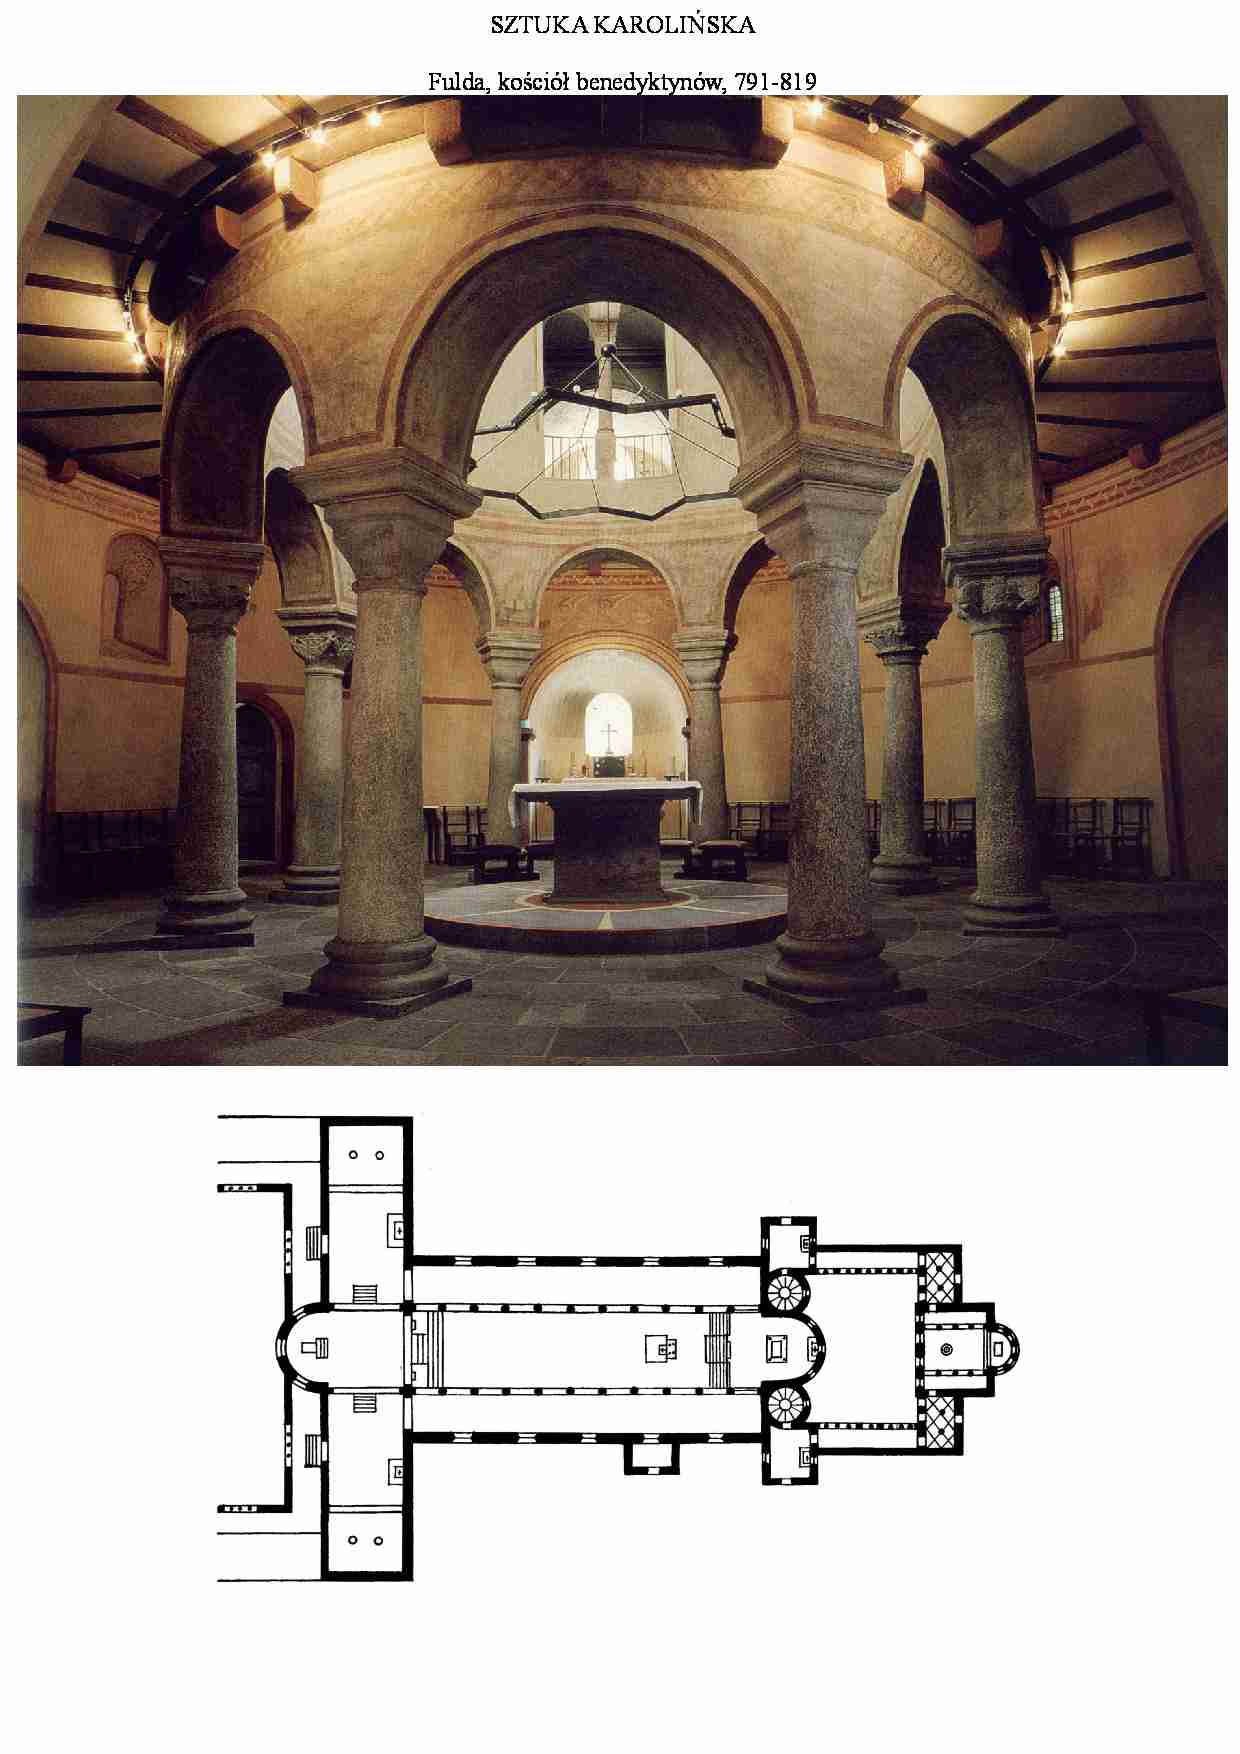 Sztuka karolińska-Fulda, kościół benedyktynów - strona 1